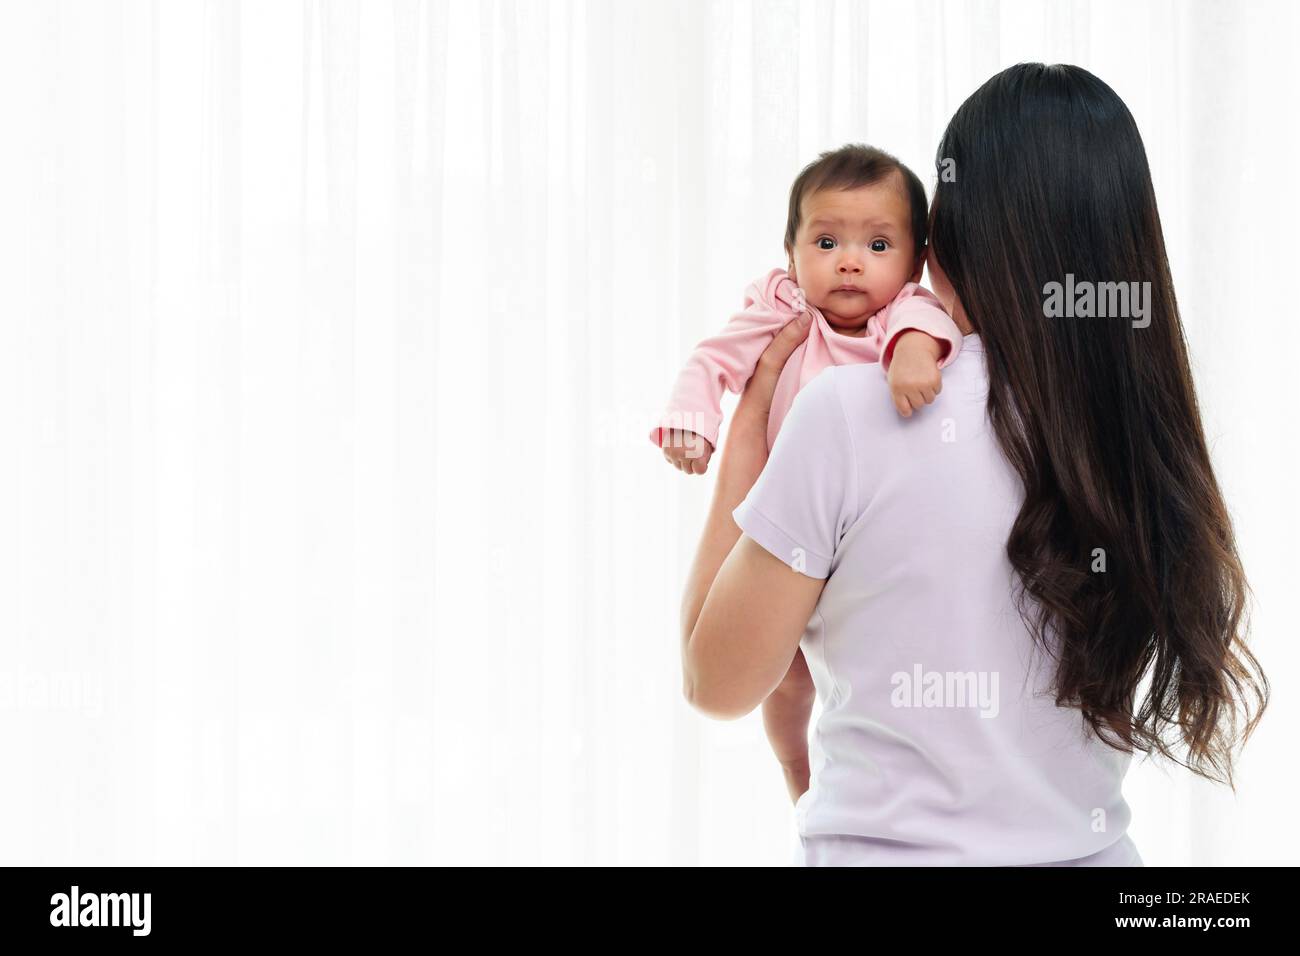 madre que sostiene al bebé recién nacido eructando después de alimentar la leche en el fondo blanco de la ventana Foto de stock